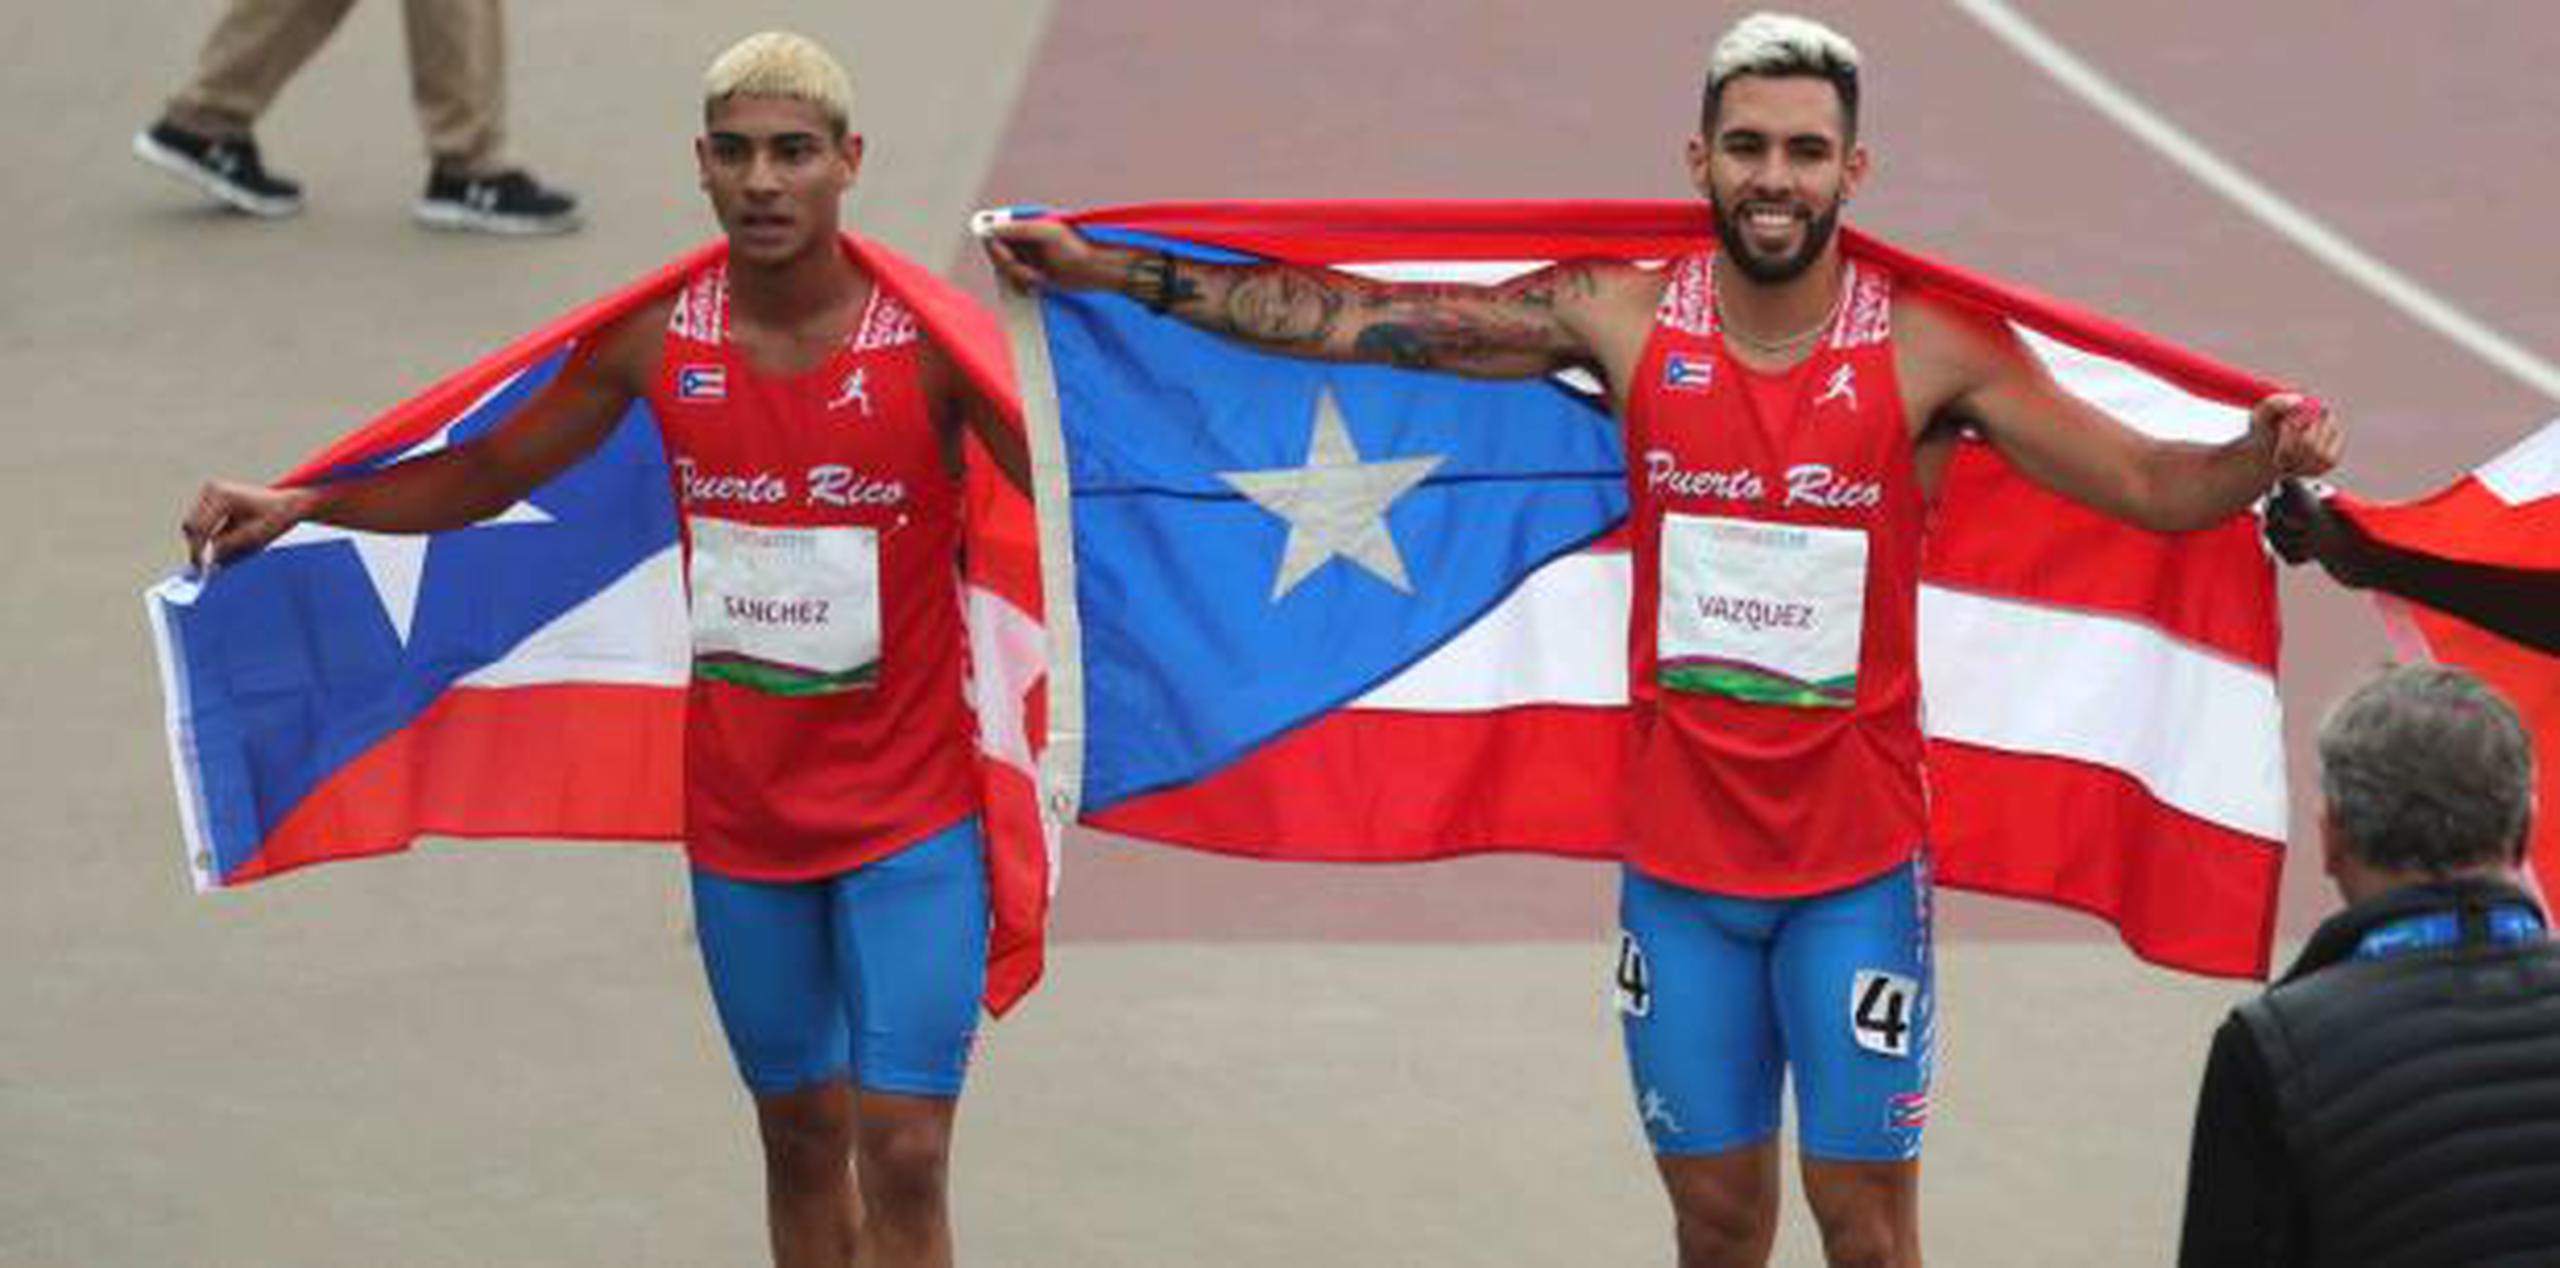 Ryan Sánchez y Wesley Vázquez fueron medallistas en los Juegos Panamerianos en Lima. (Archivo)